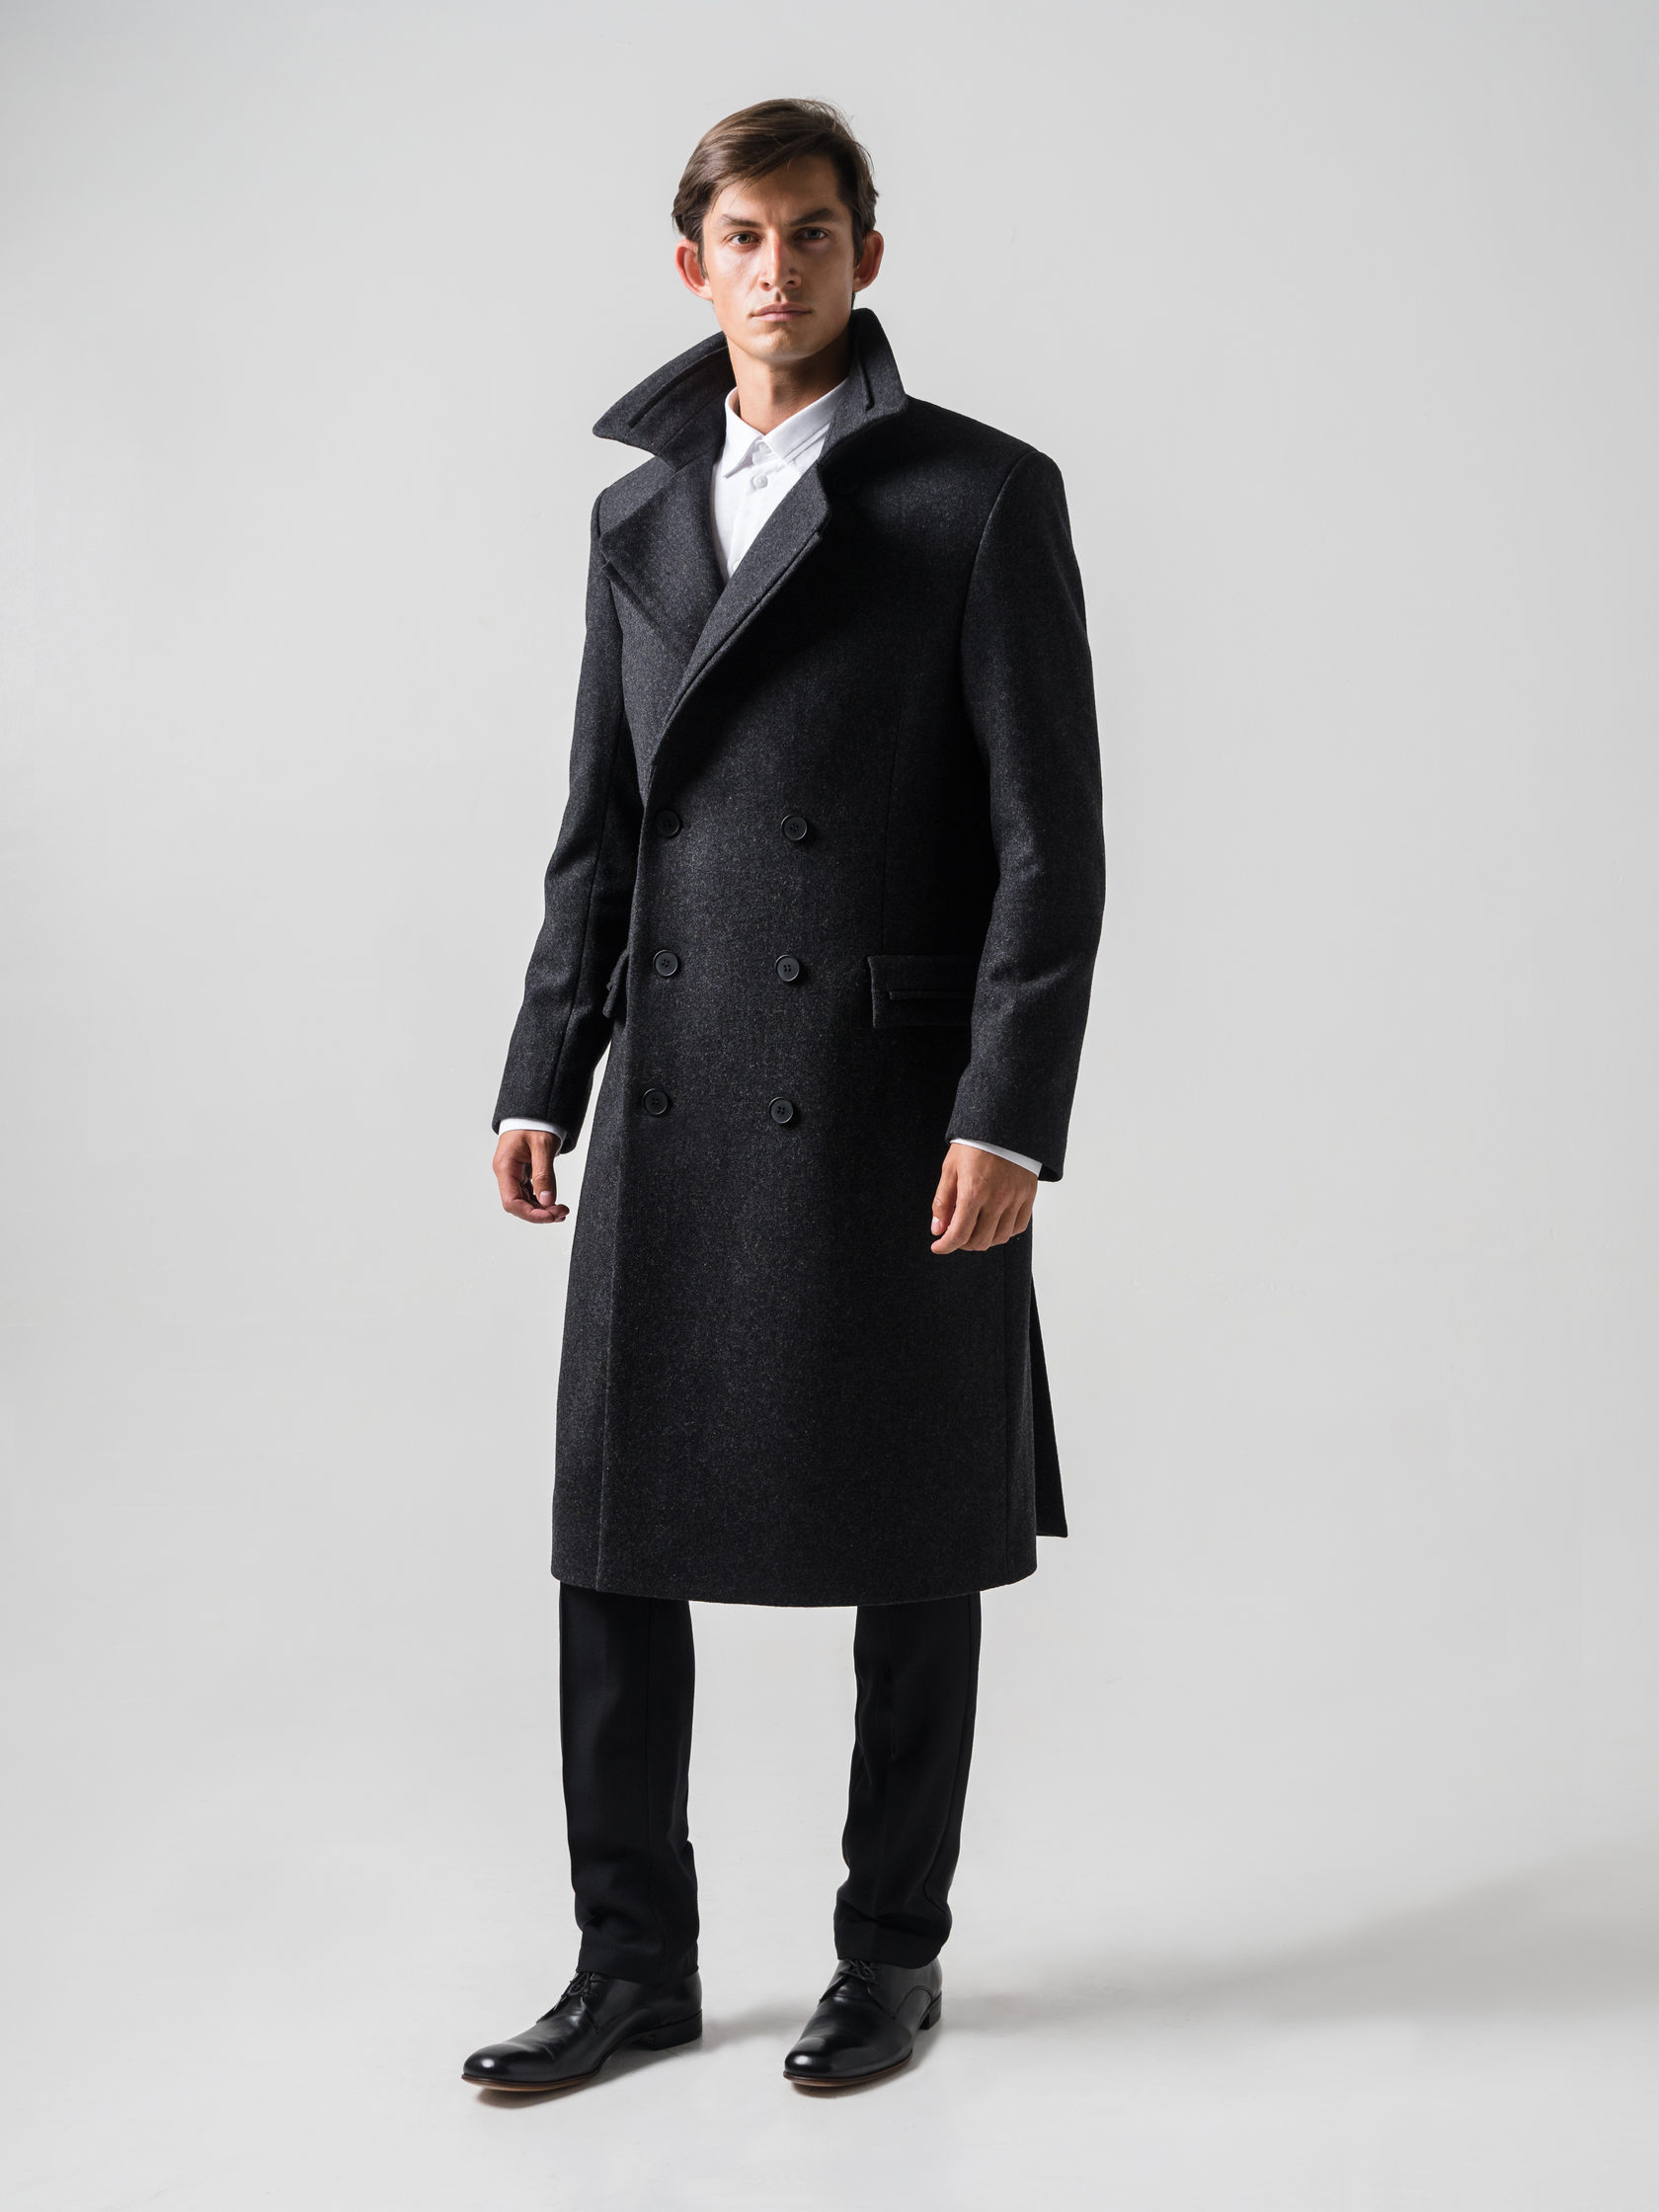 Пальто мужское минск. Пальто мужское Avalon 10622. Camelot Classic пальто мужское. Defacto мужское длинное пальто. Lozenge пальто мужское model 560.